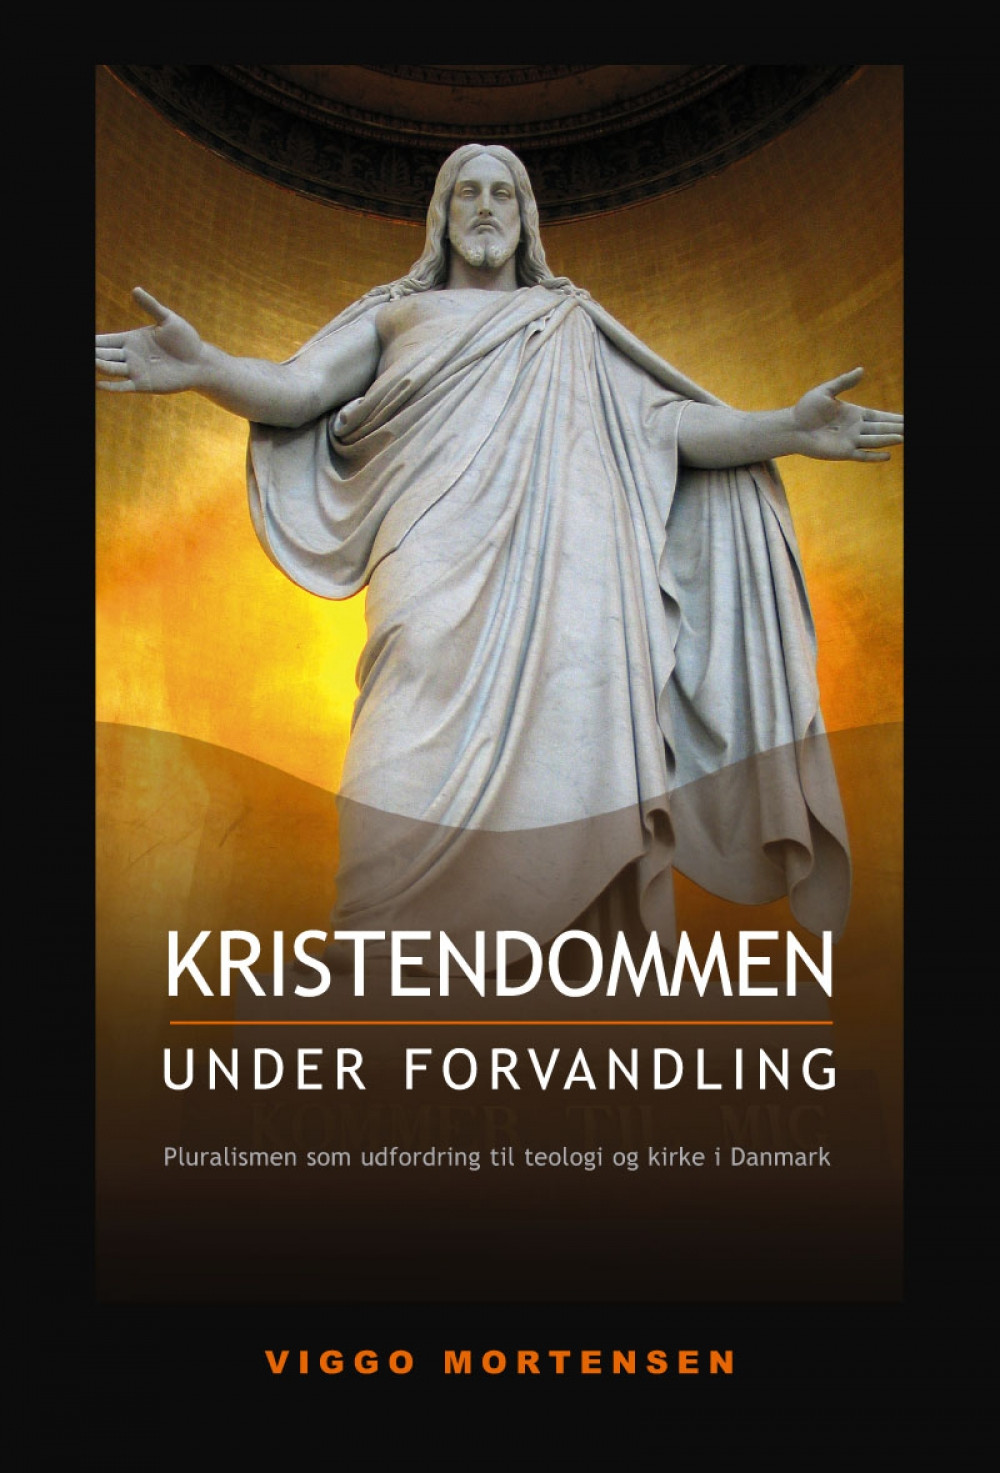 Kristendommen under forvandling - pluralisme som udfordring til teologi og kirke i Danmark<br>Læs mere her